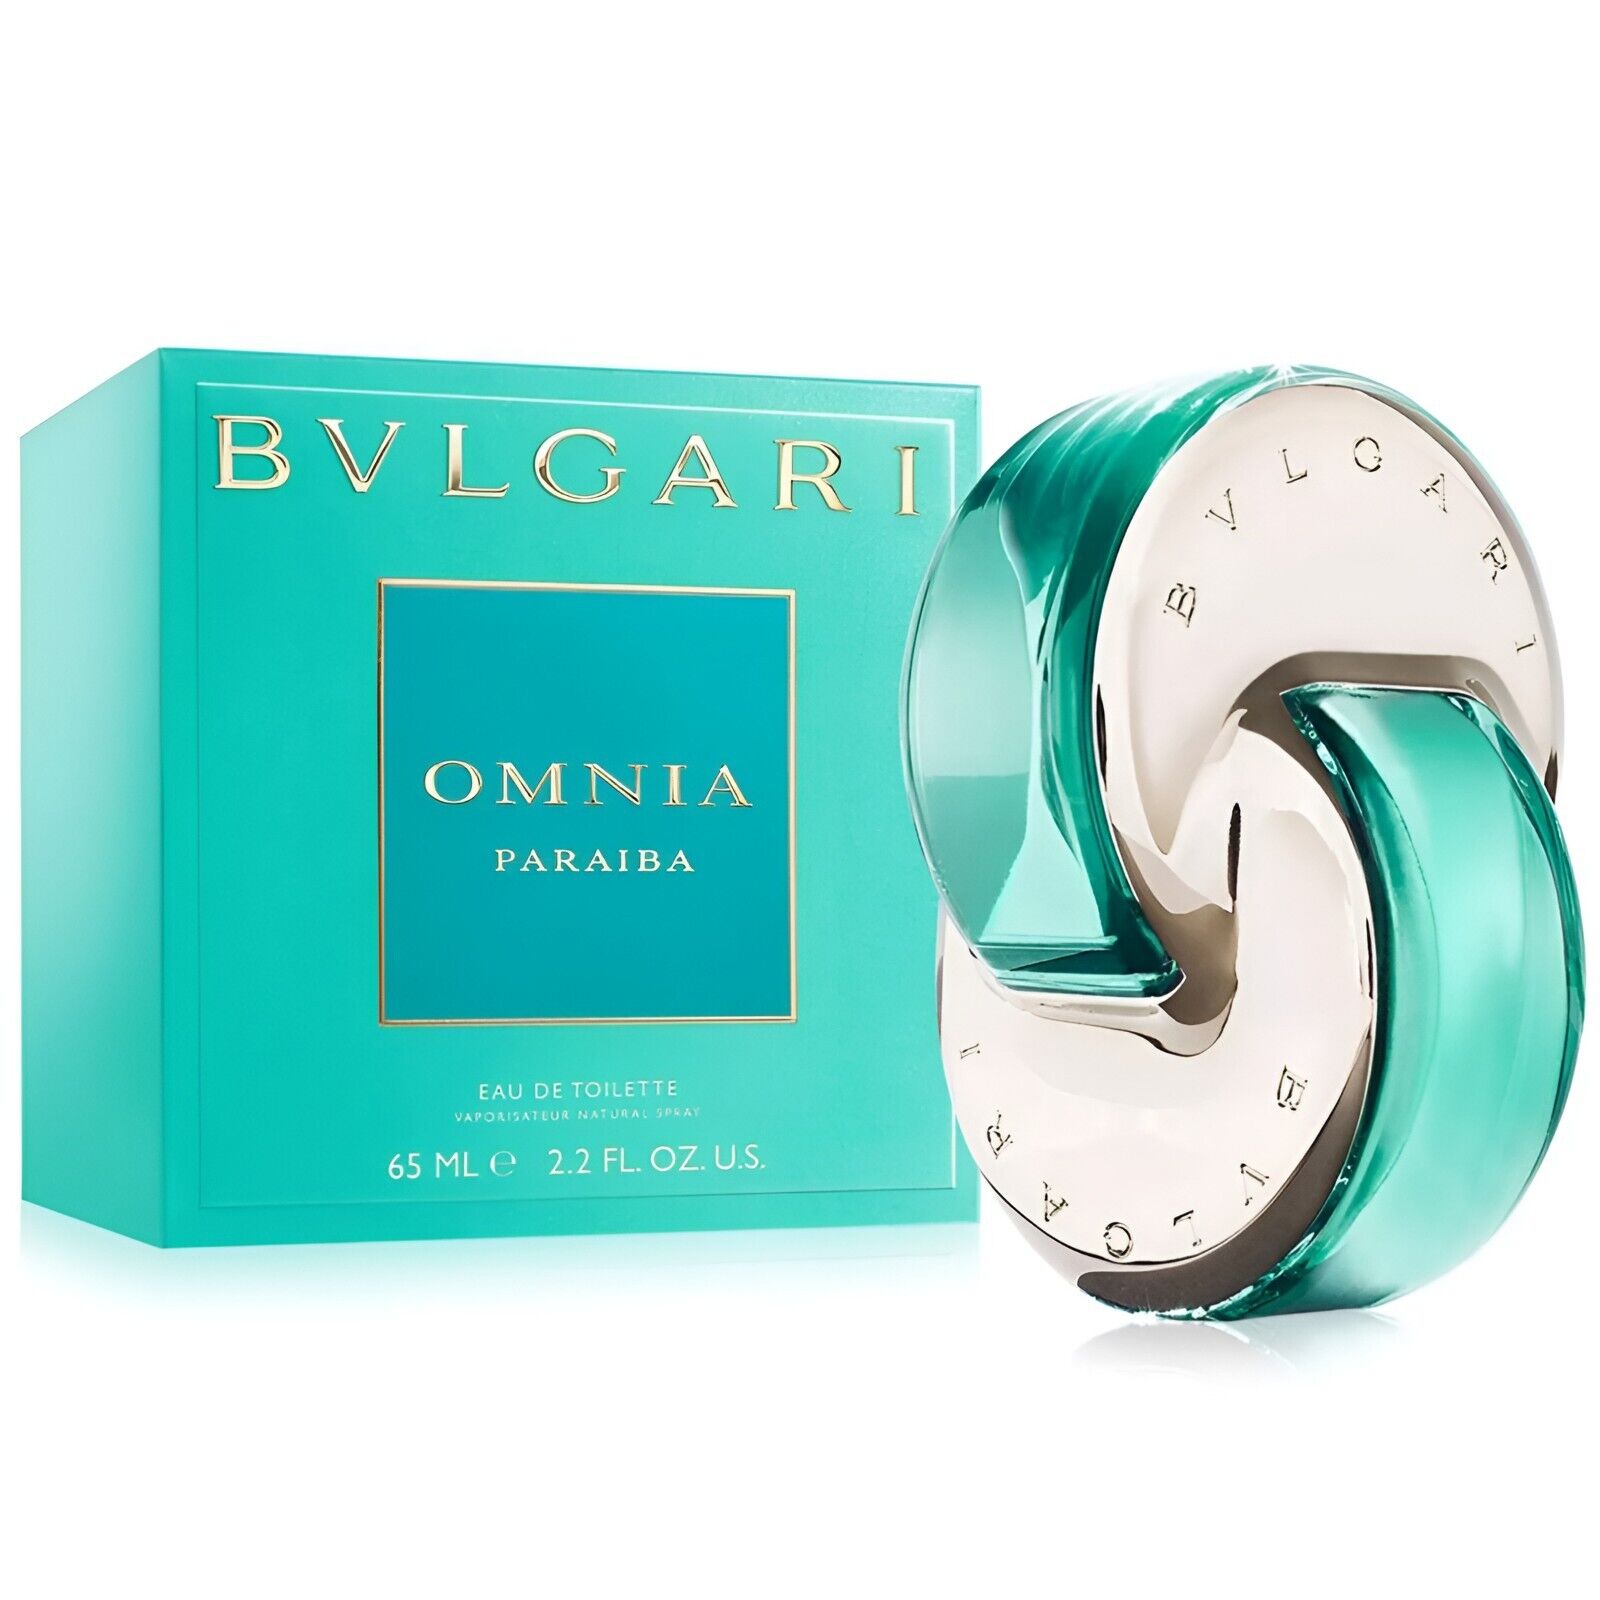 Bvlgari Omnia Paraiba Eau De Toilette Spray 2.2 oz/ 65 ml for Women